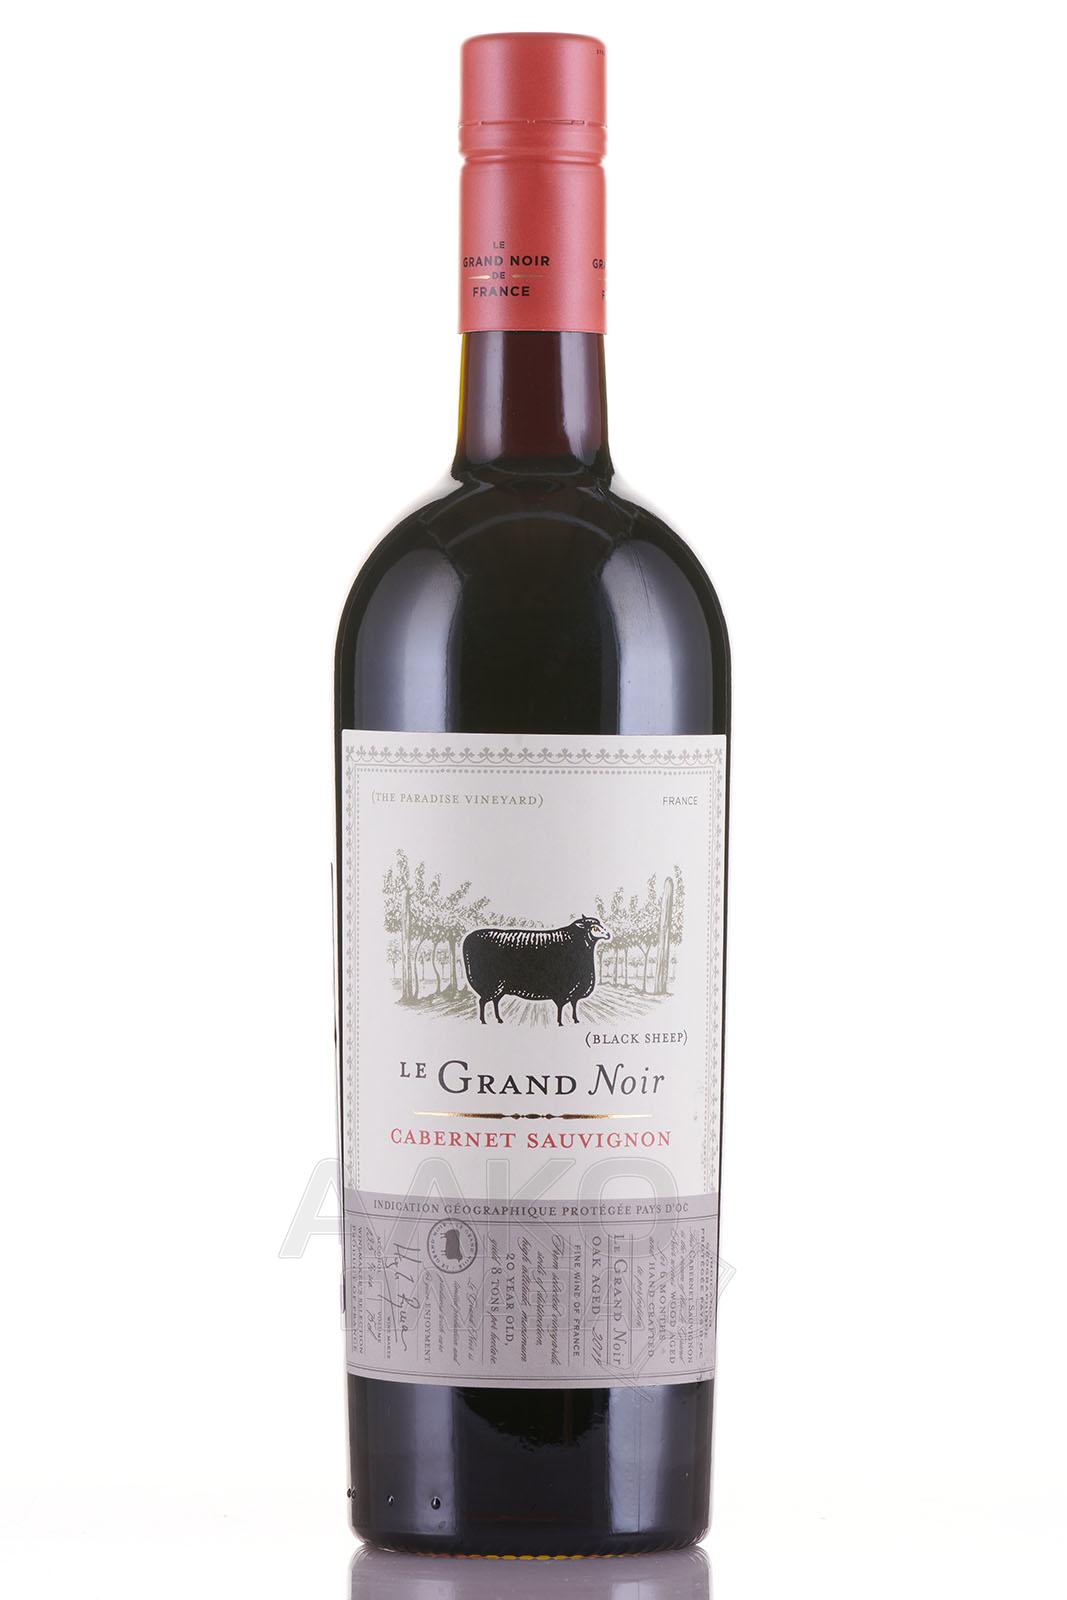 Le Grand Noir Cabernet Sauvignon Pays d`Oc IGP 0.75l Французское вино Ле Гран Нуар Каберне Совиньон 0.75 л.